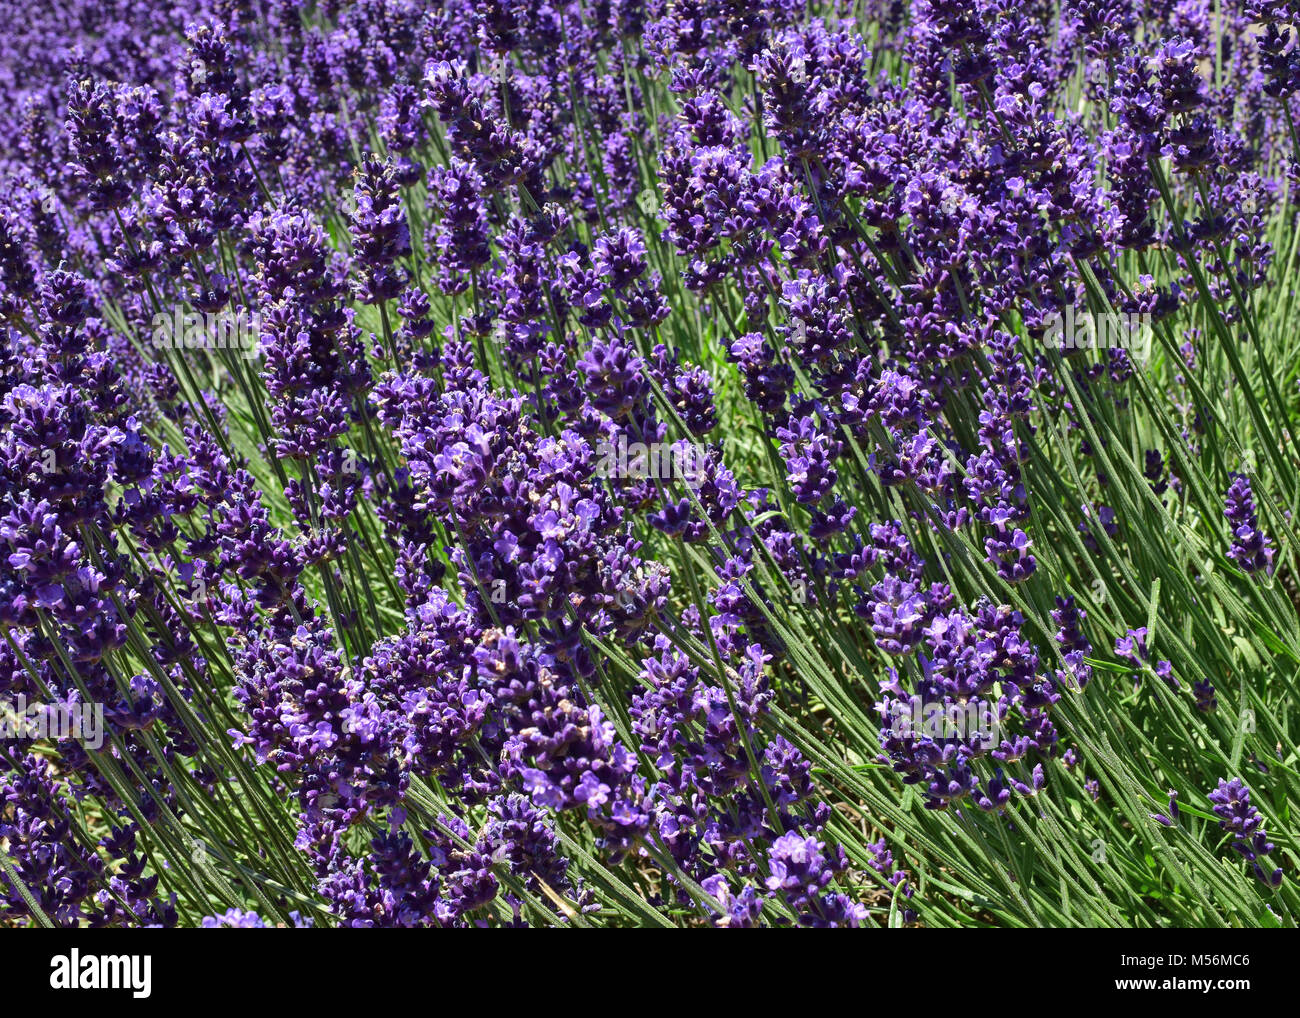 Close up Ultra Violett Lavendel blühen in einem Feld. Lavandula angustifolia. Natürliches Aussehen. Stockfoto